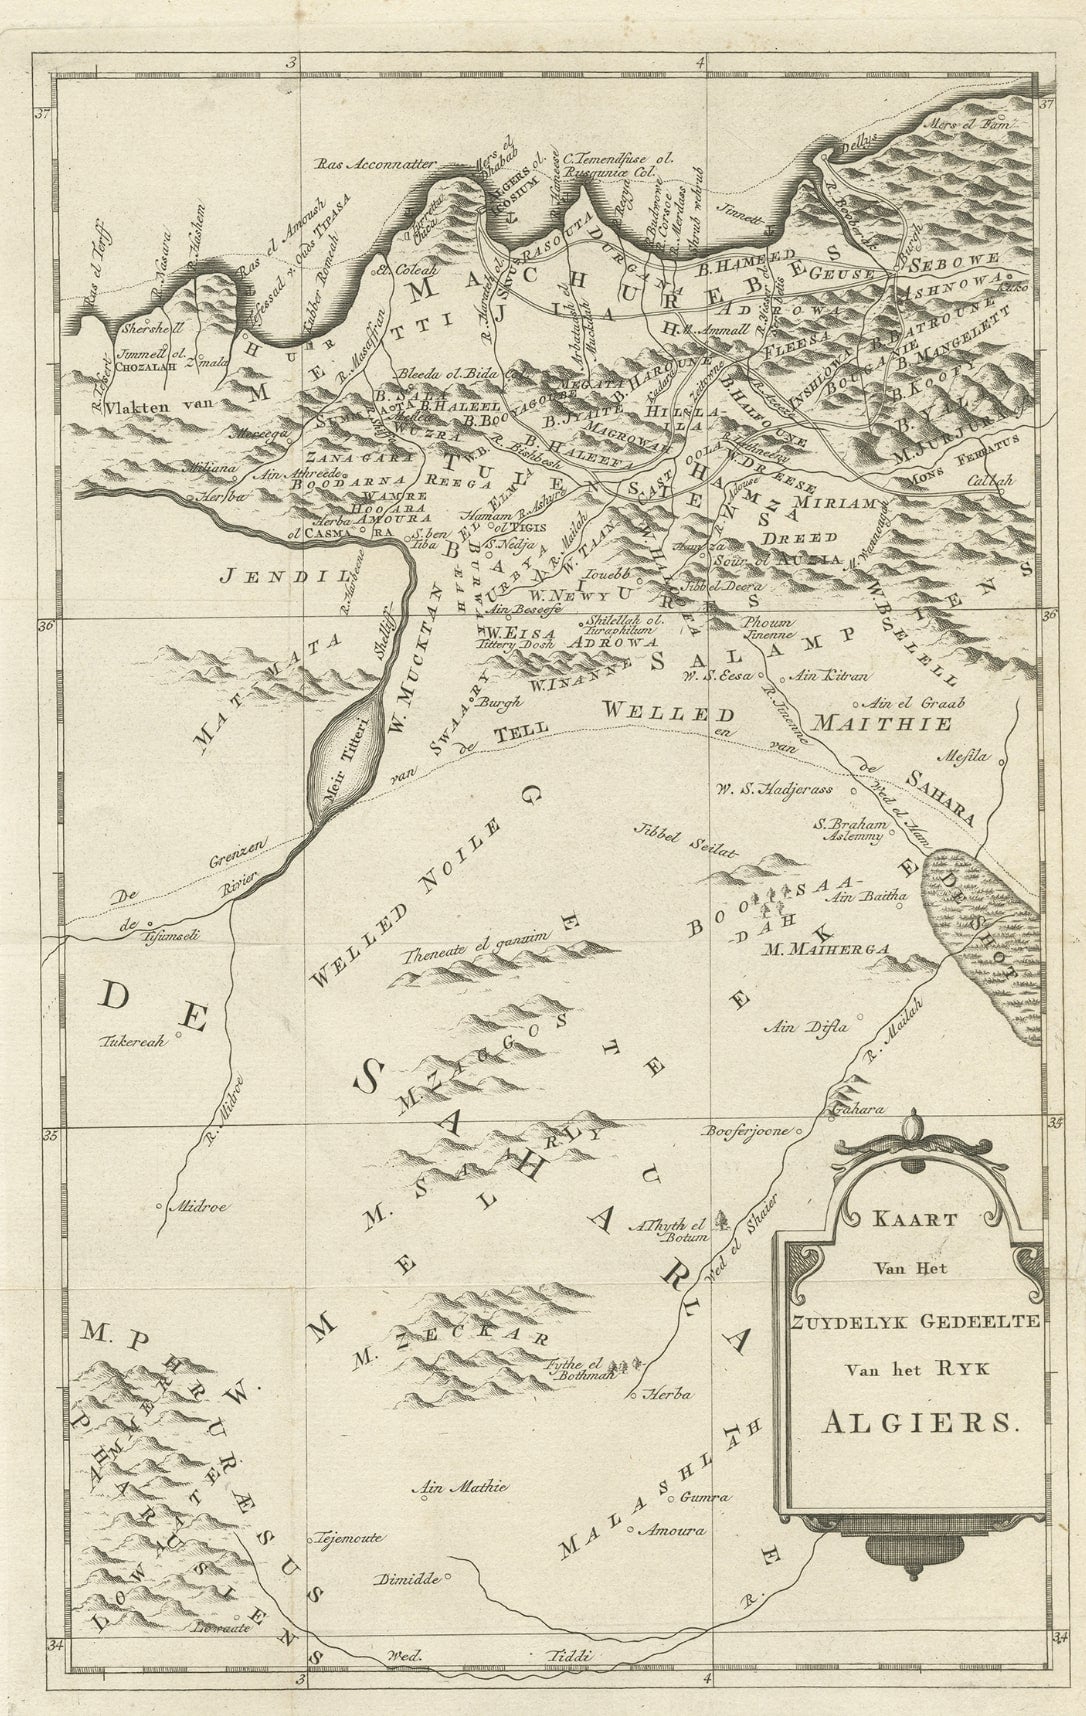 Originale originale alte Karte der südlichen Region des Königreichs Algiers, 1773